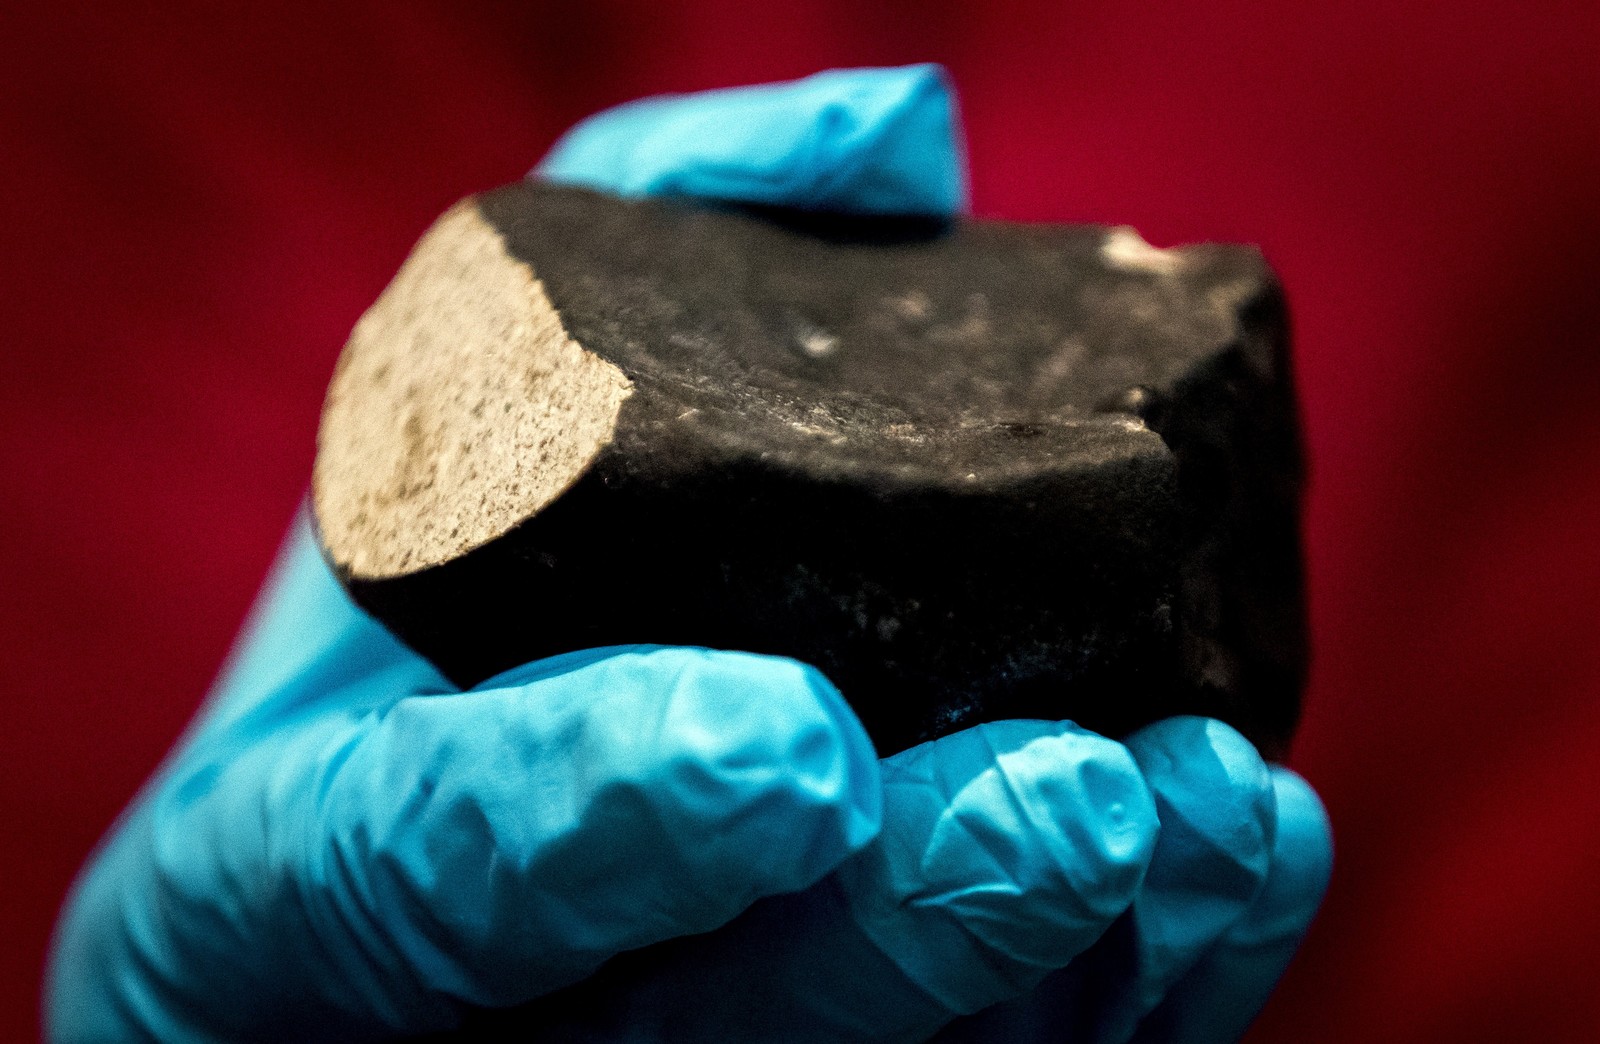  Este é o sexto meteorito descoberto na Holanda nos últimos 200 anos (Foto: Koen van Weel / ANP / AFP )